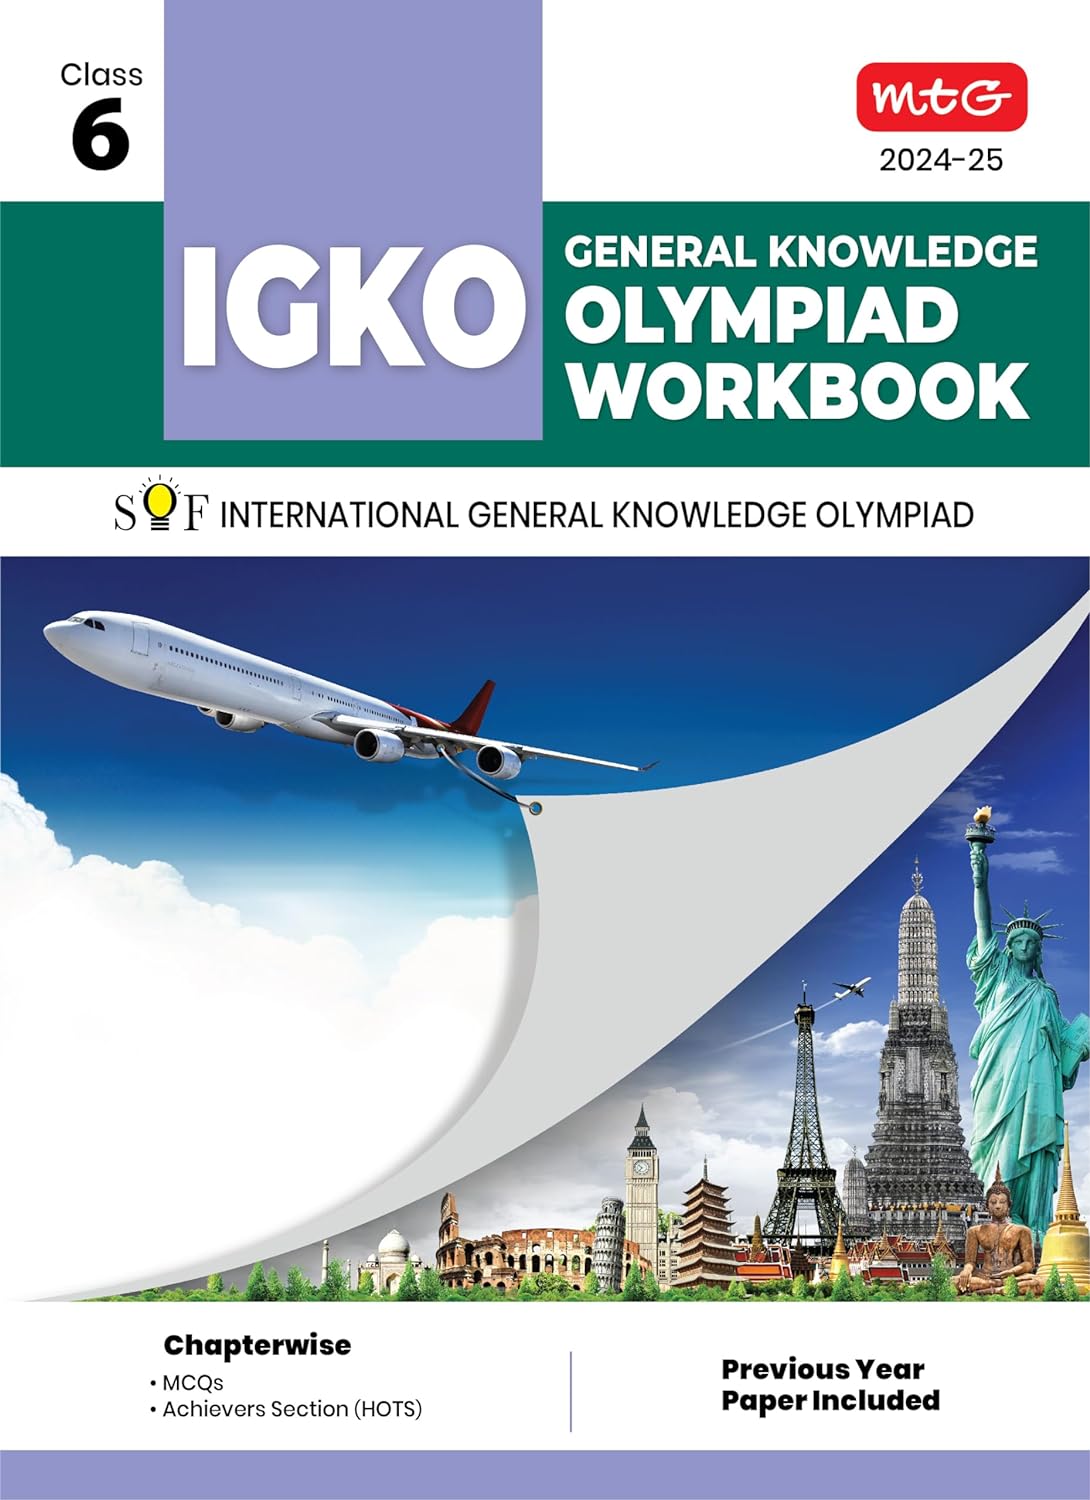 MTG GENERAL KNOWLEDGE OLYMPIAD WORKBOOK IGKO 6